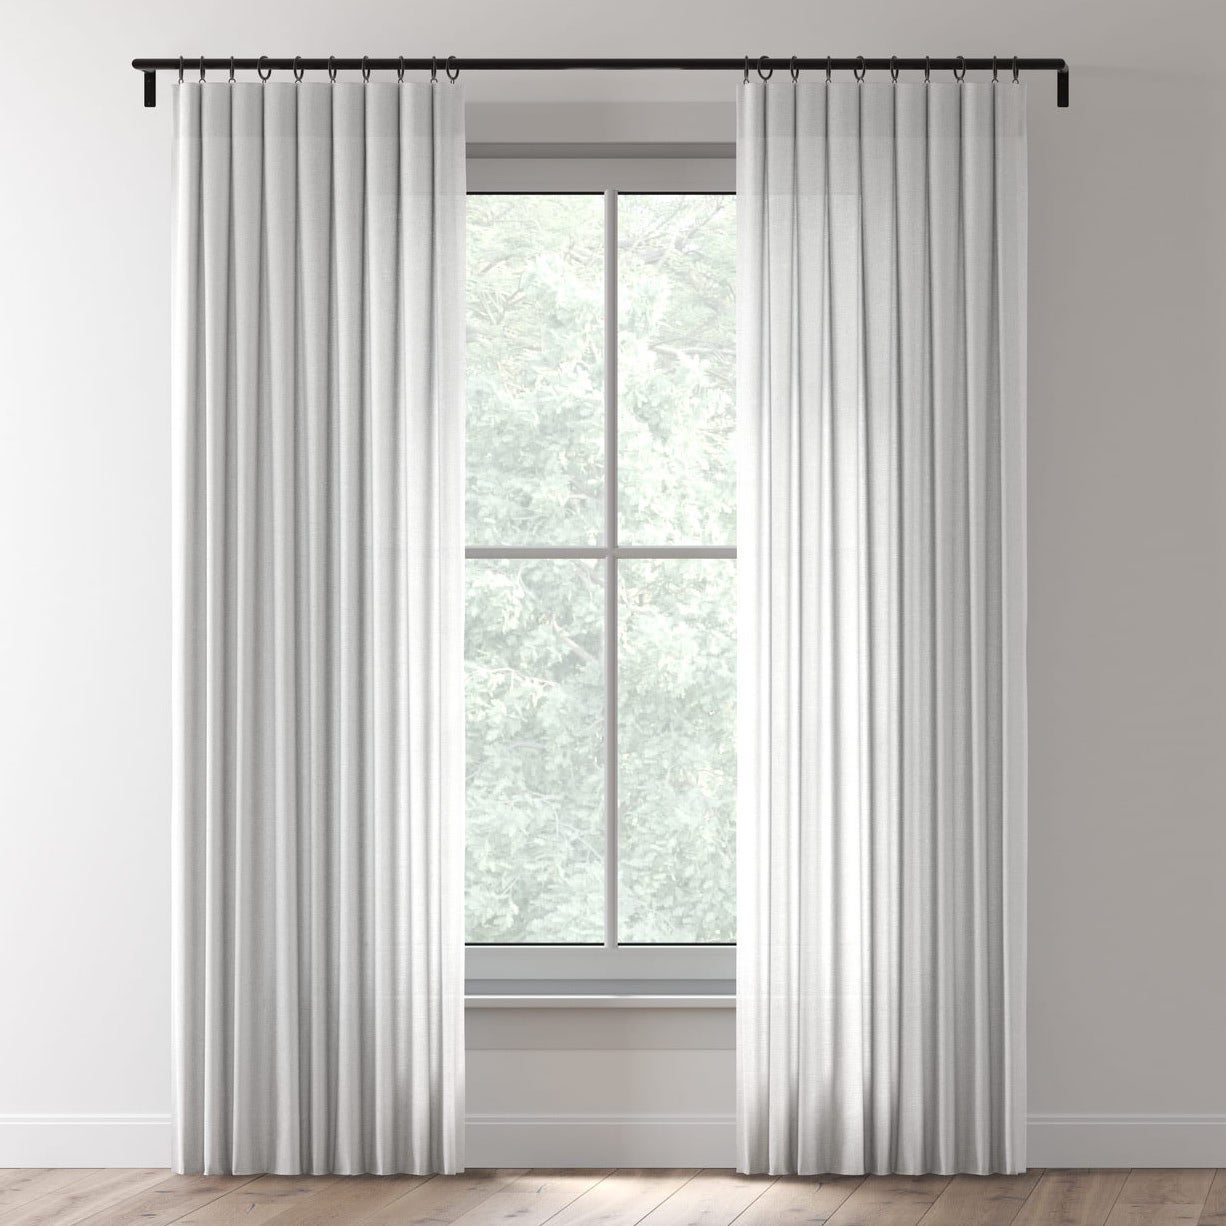 Everhem Curtains Custom Drapery